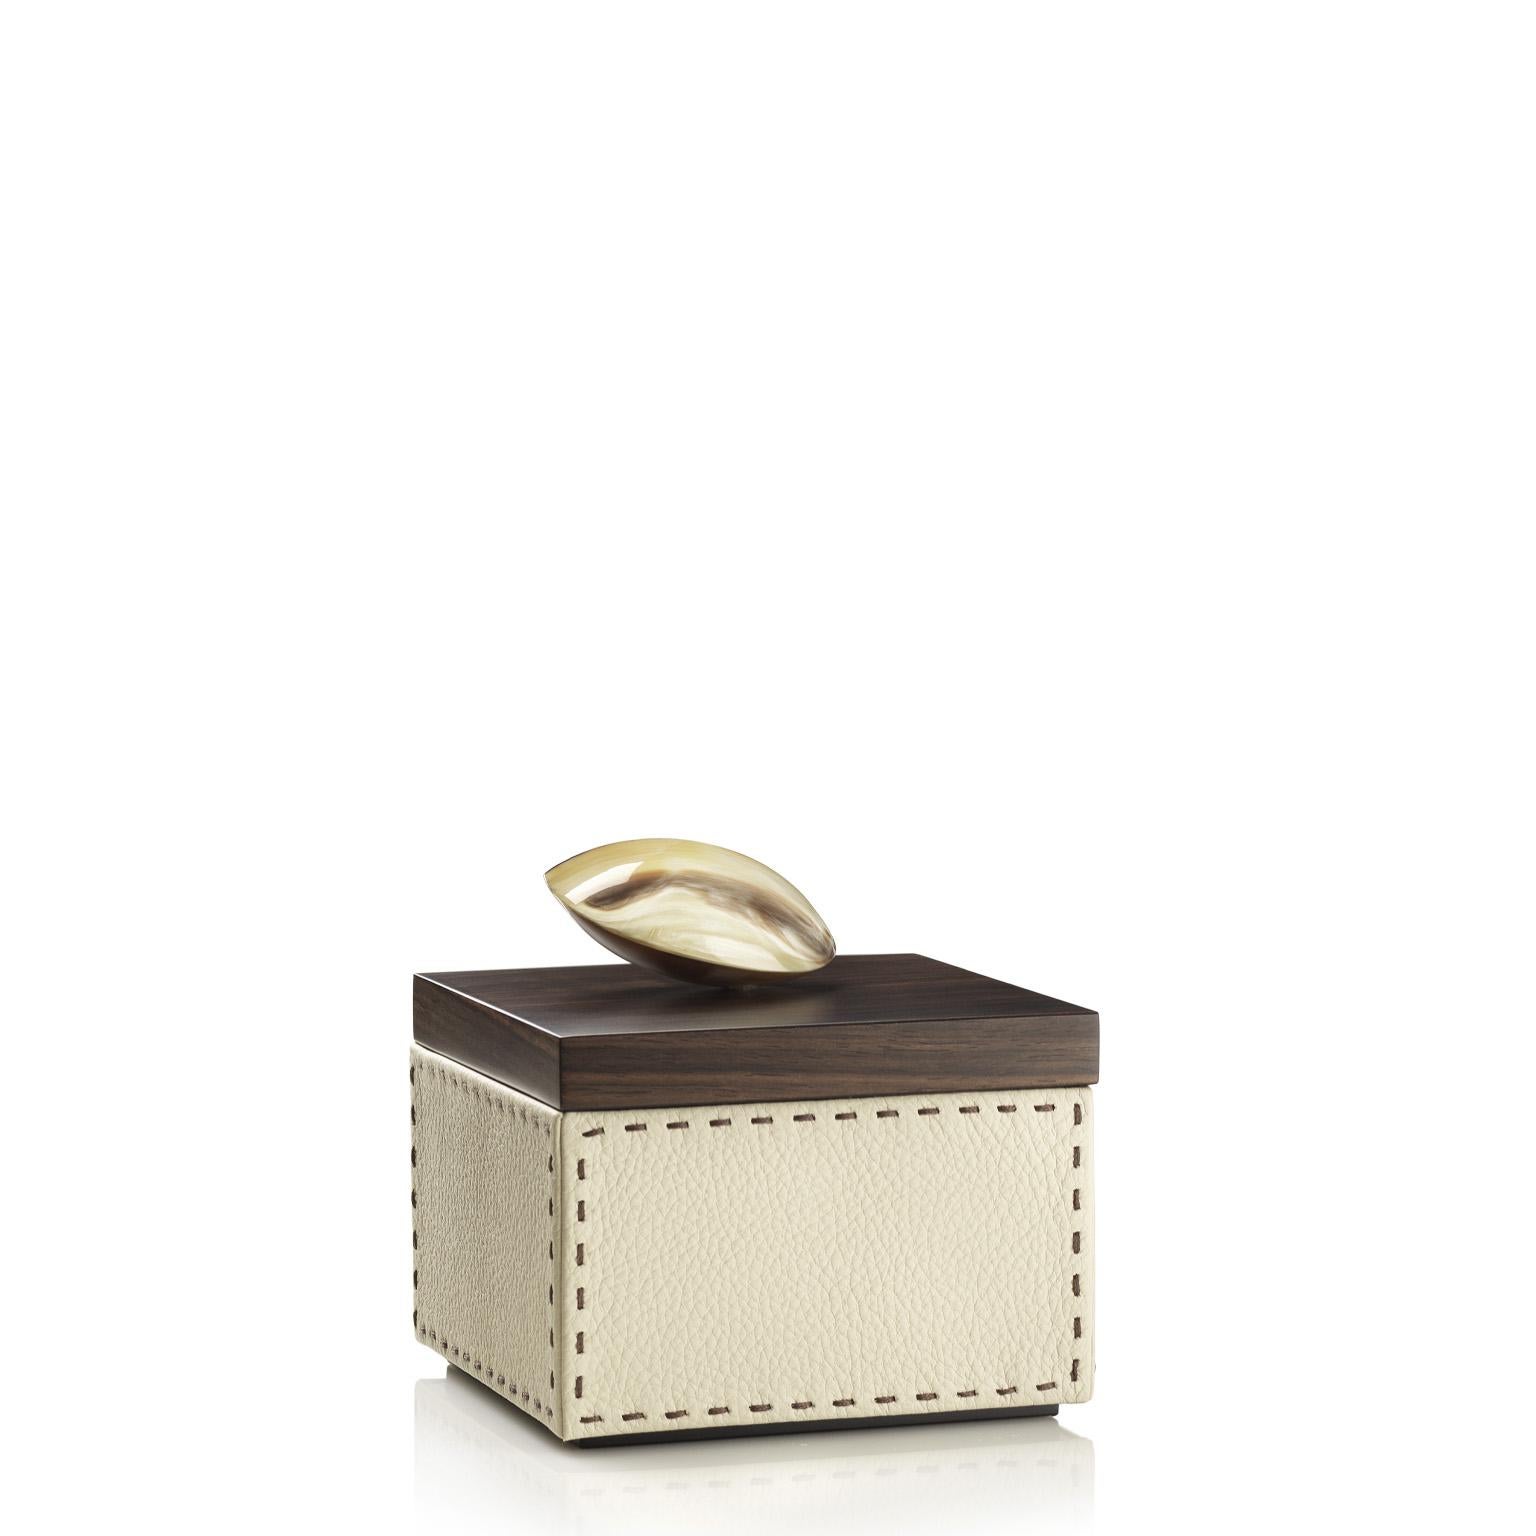 Contemporary Capricia Square Box in Pebbled Leather with Handle in Corno Italiano, Mod. 4471 For Sale